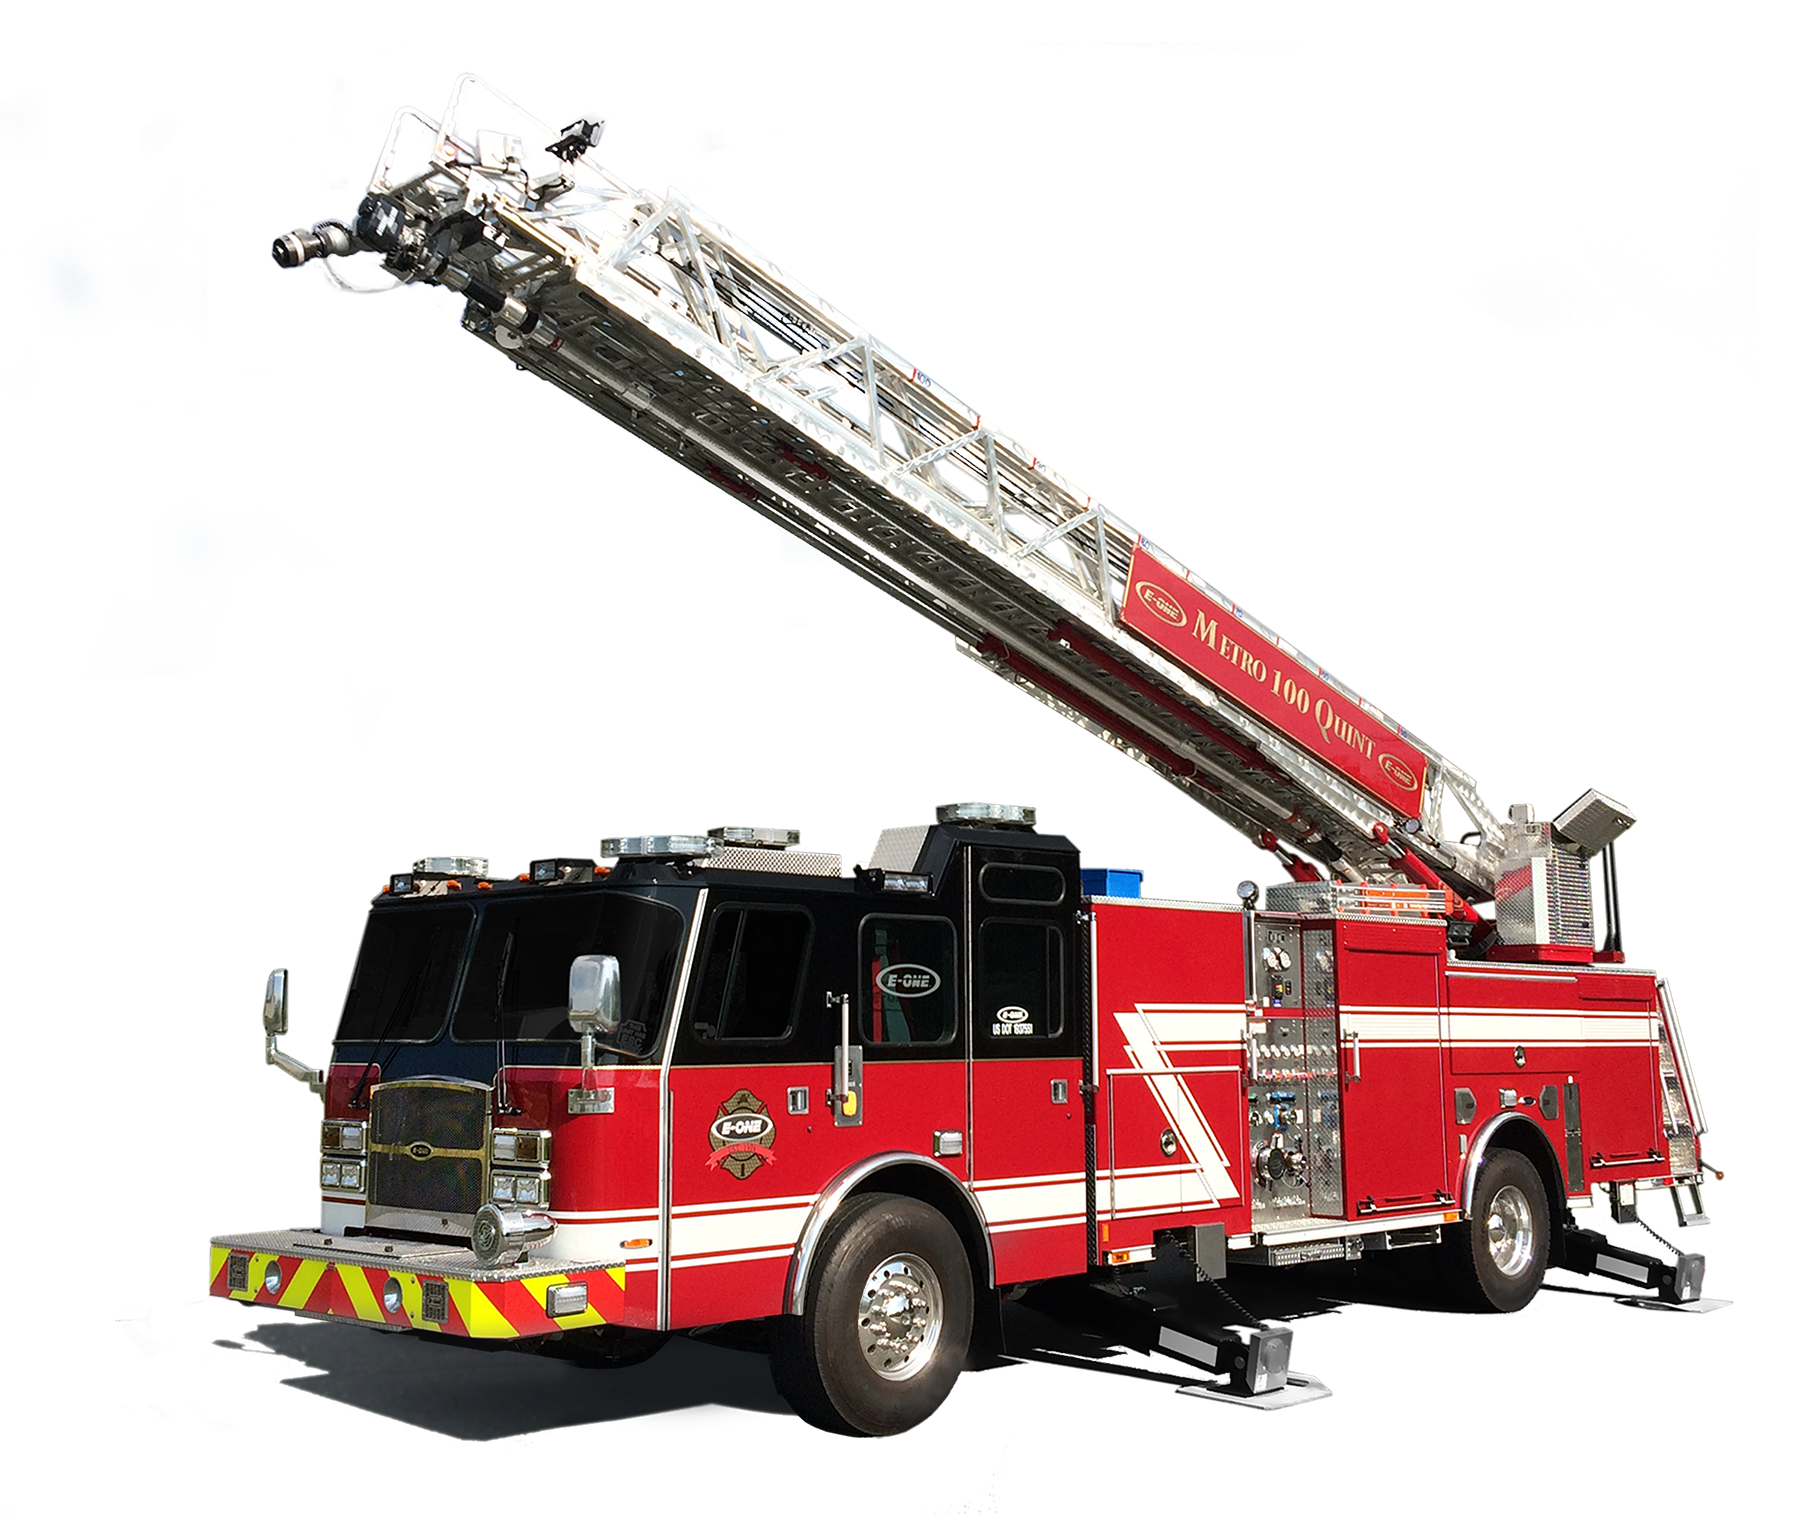 Пожарный автомобиль лестница. Машина "Fire Truck" пожарная, 49450. Пожарные машины Fire Ladder Truck. Gear Fire transparent fs238-5a пожарная машина. Пожарный автомобиль с лестницей.